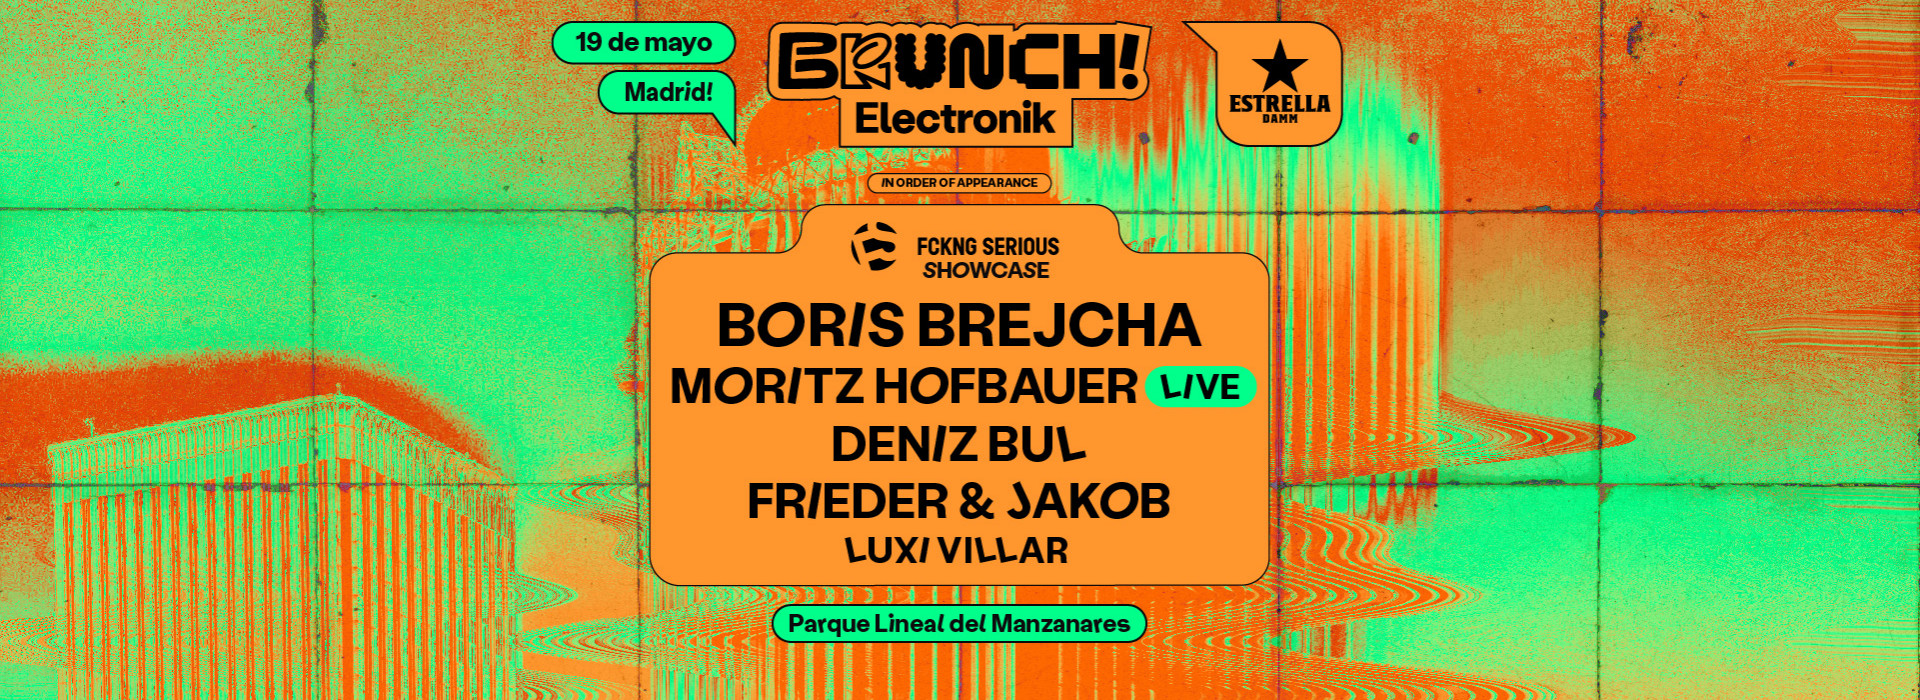 Brunch Electronik Madrid #4